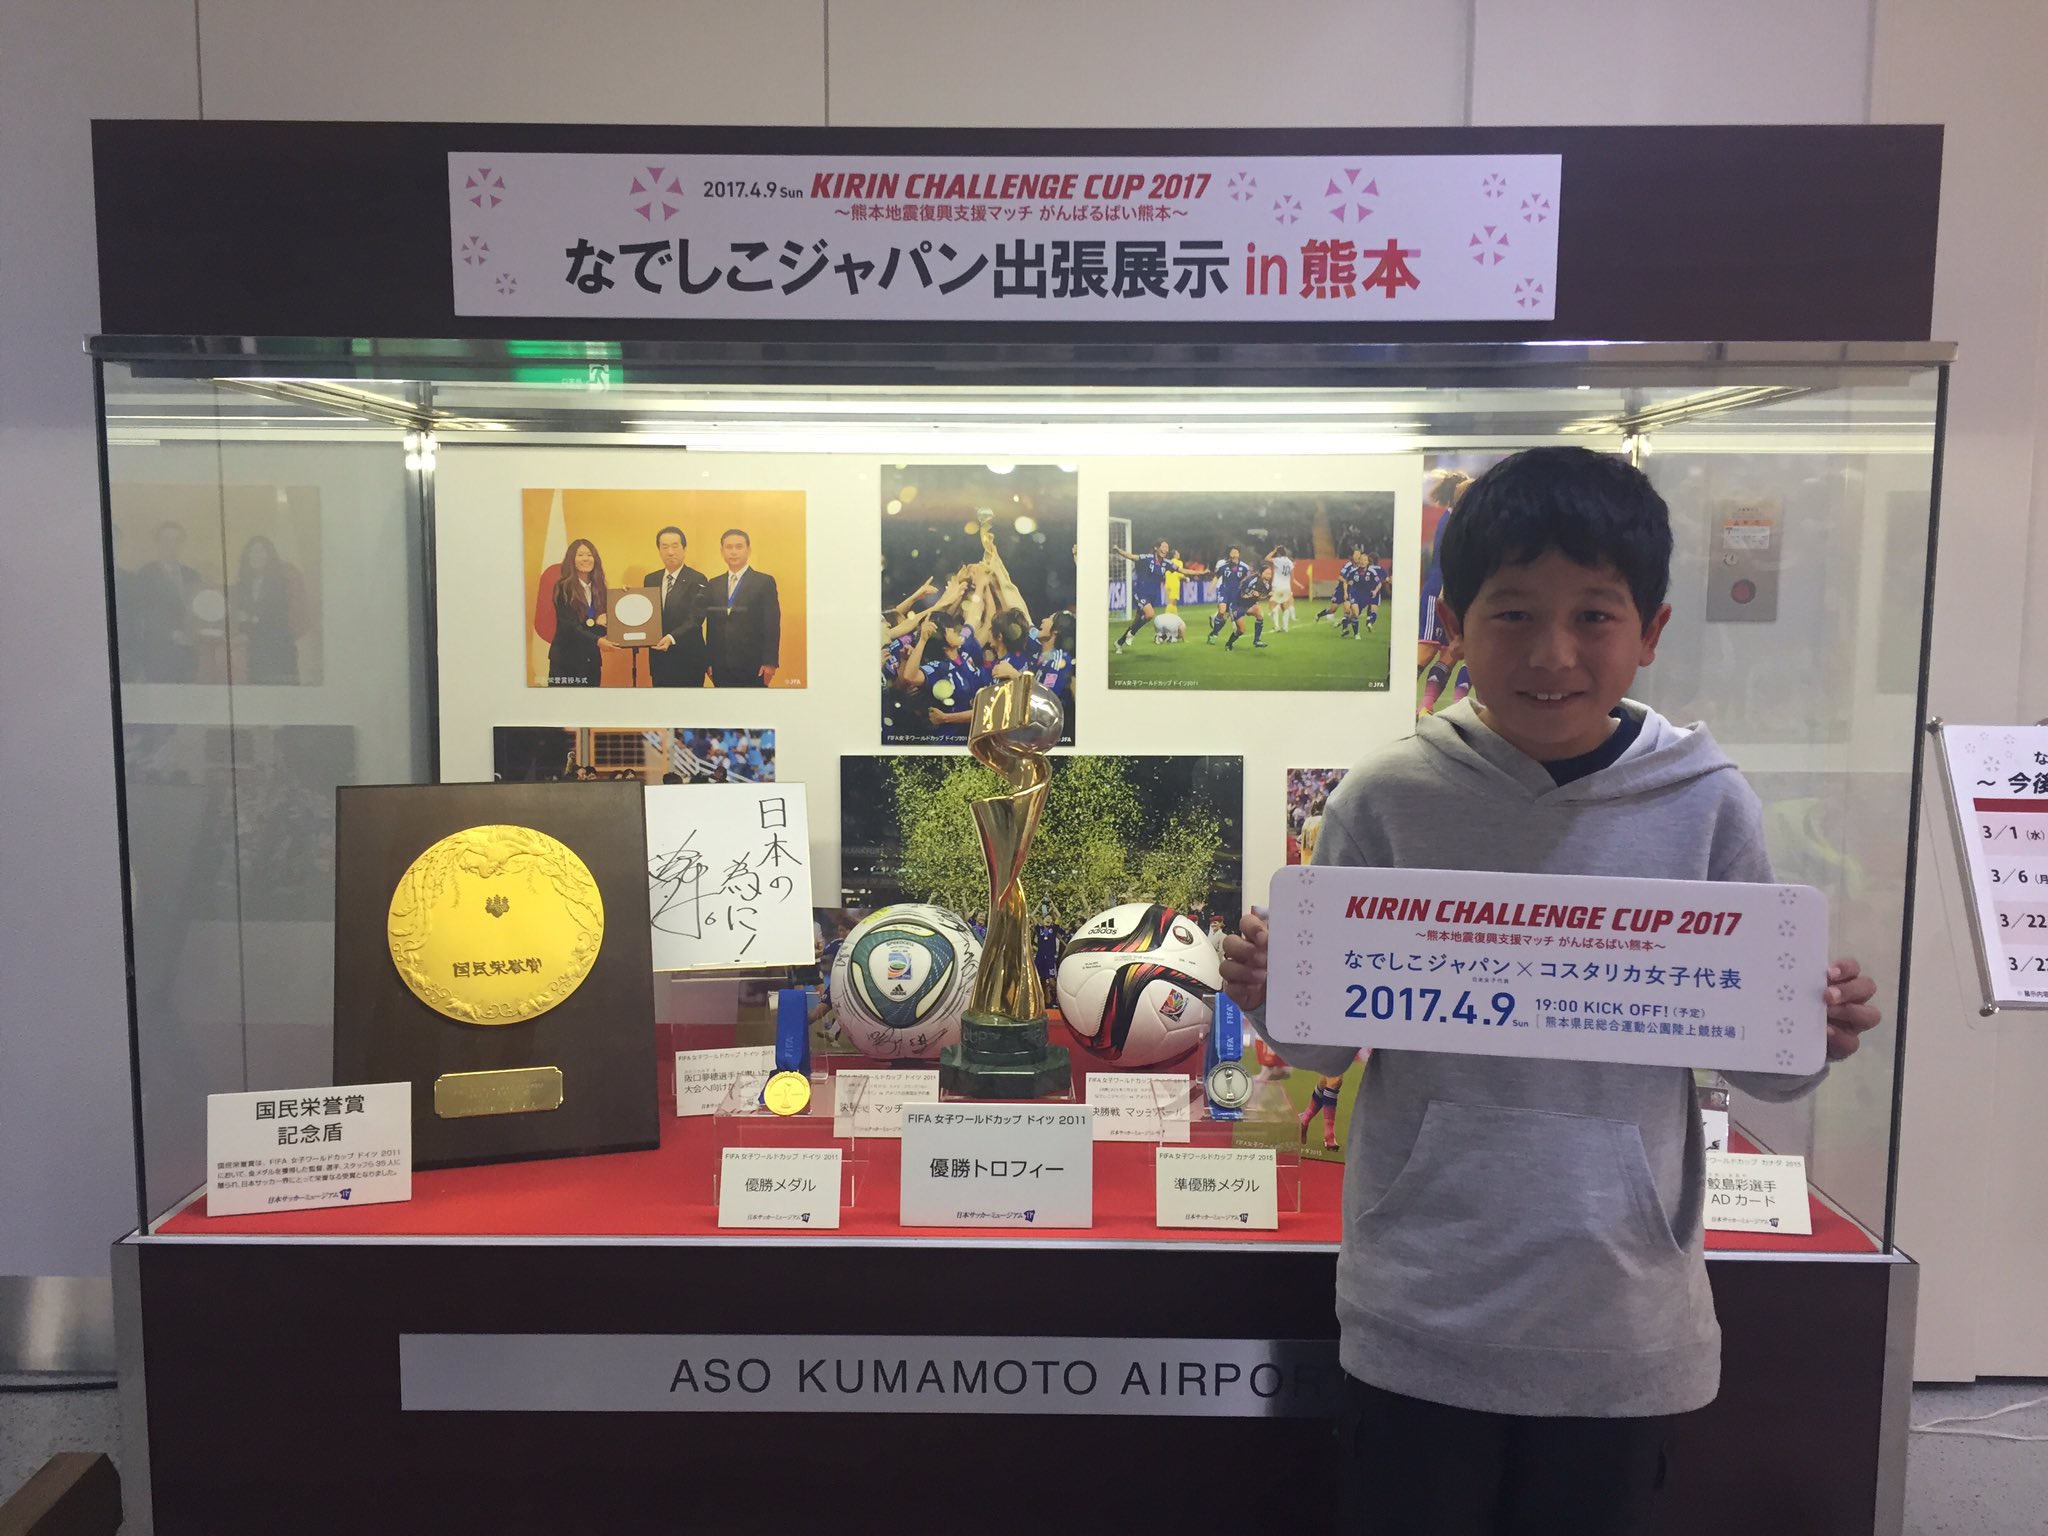 Jfaなでしこサッカー なでしこジャパン出張展示in熊本 熊本空港 本日 これを見に来ました という声を本当に多くいただきました ご来場 誠にありがとうございました キリンチャレンジカップ17 4 9 熊本 T Co 8duk2ku4ou